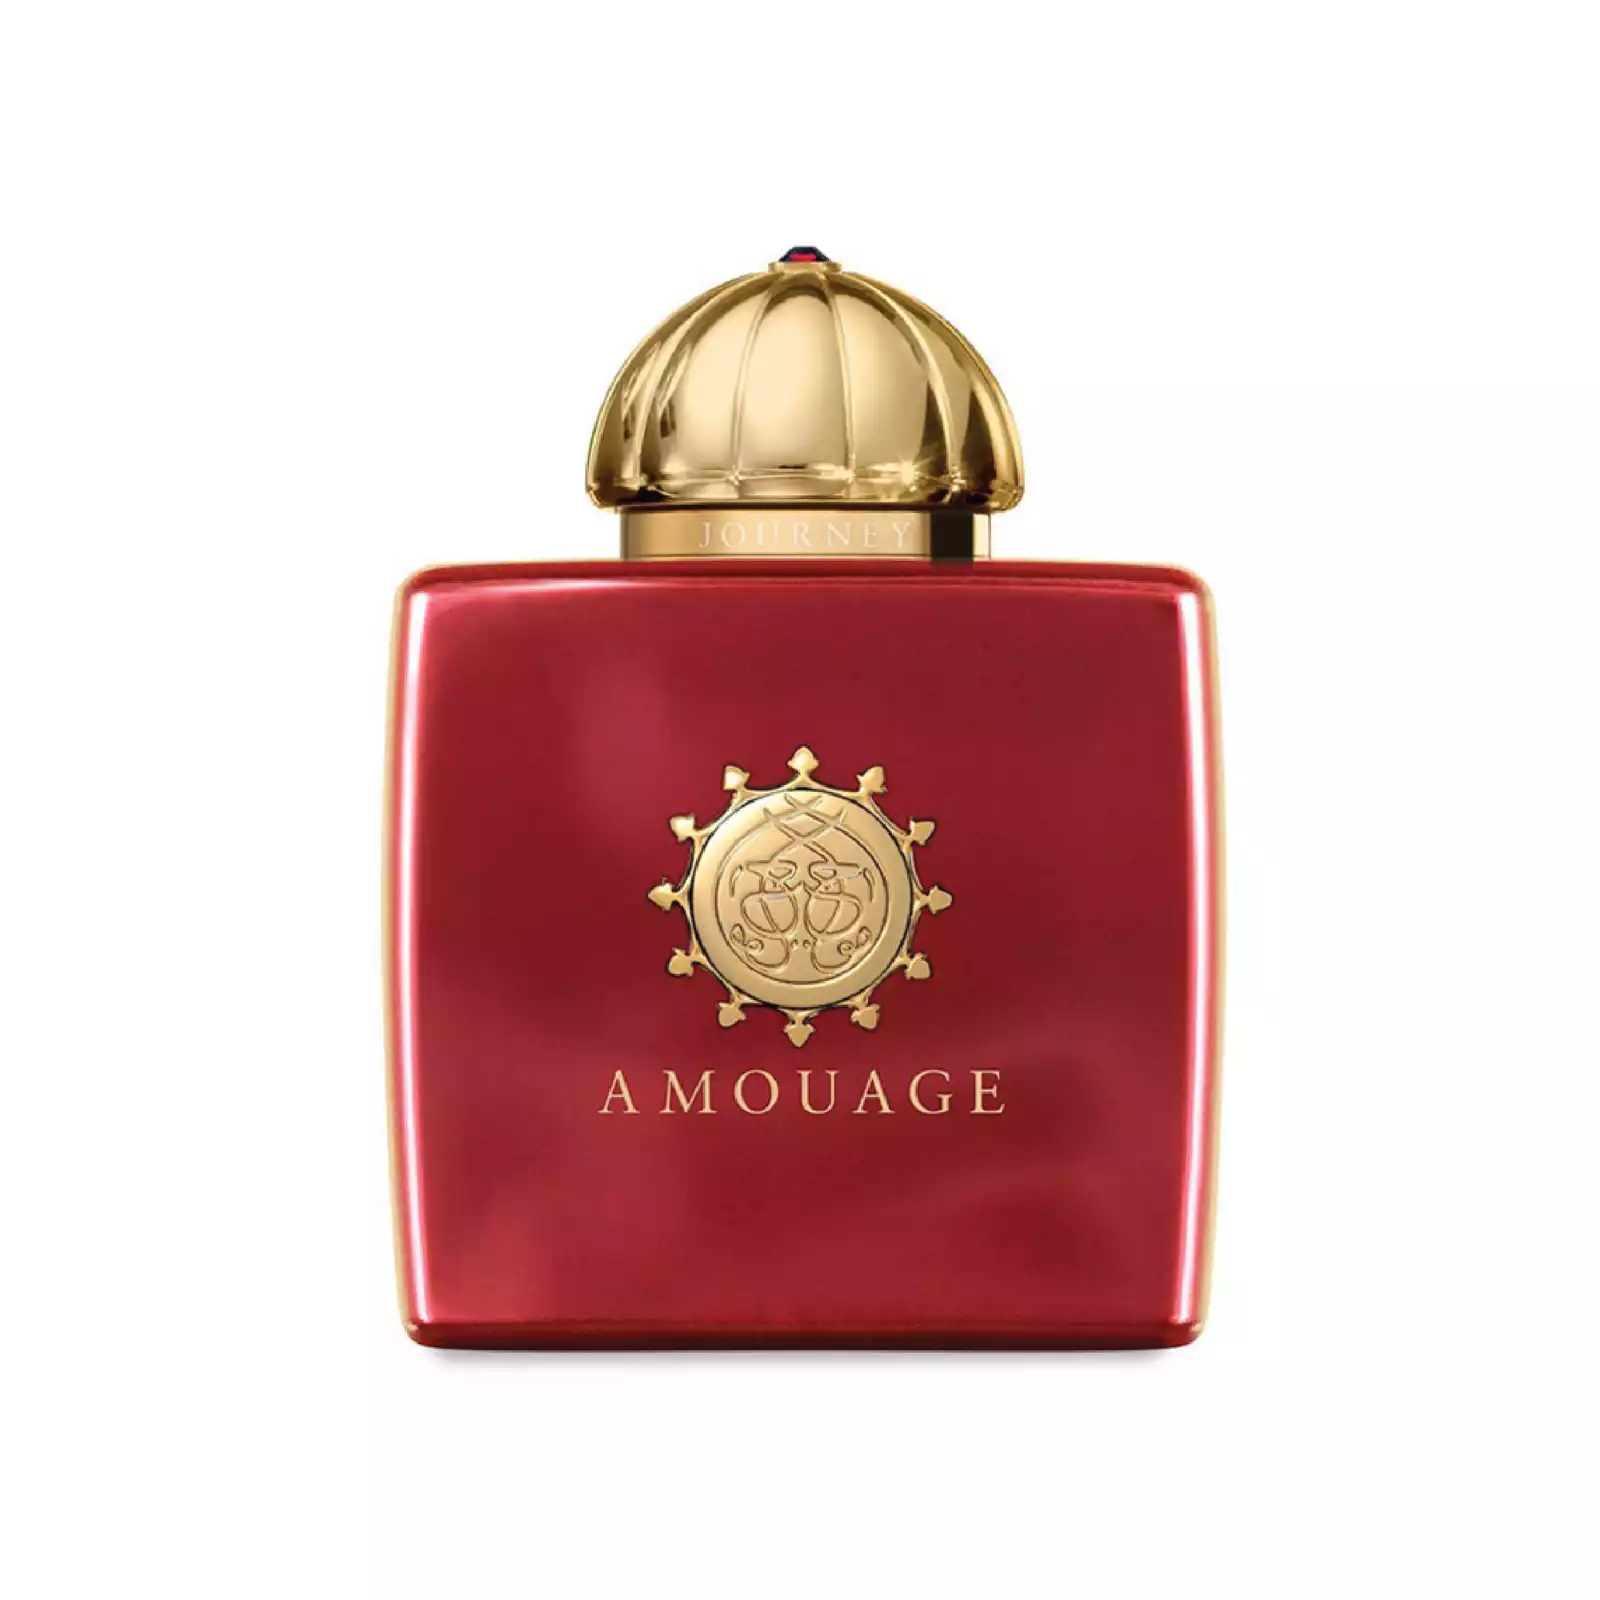 JOURNEY – Amouage (ženski parfum)